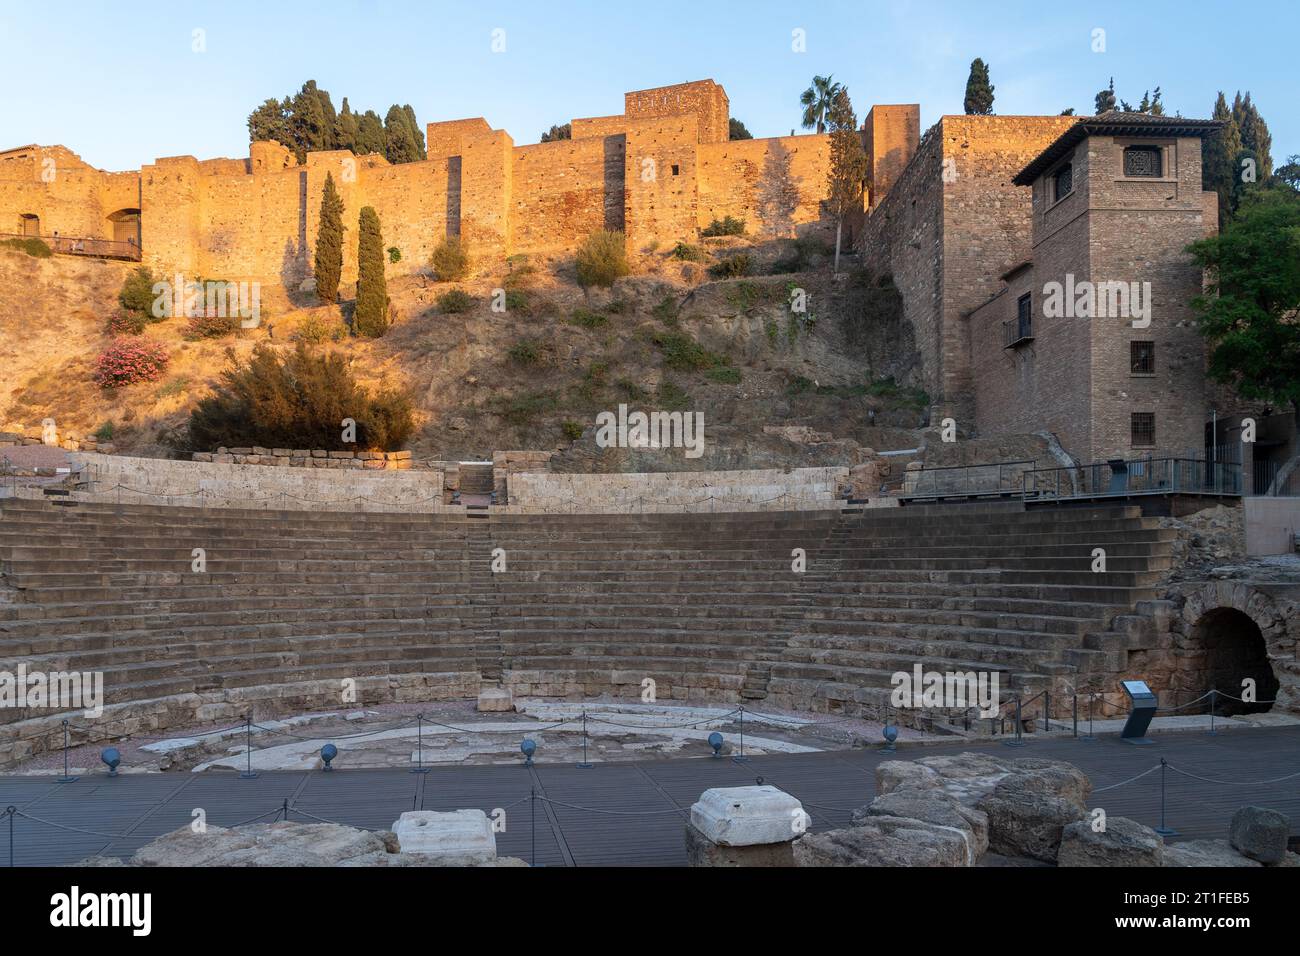 Die Festung Alcazaba in Malaga wurde während der Herrschaft des arabischen Königreichs Al-Andalus errichtet. Das römische Theater ist das älteste Denkmal in Malaga. Stockfoto